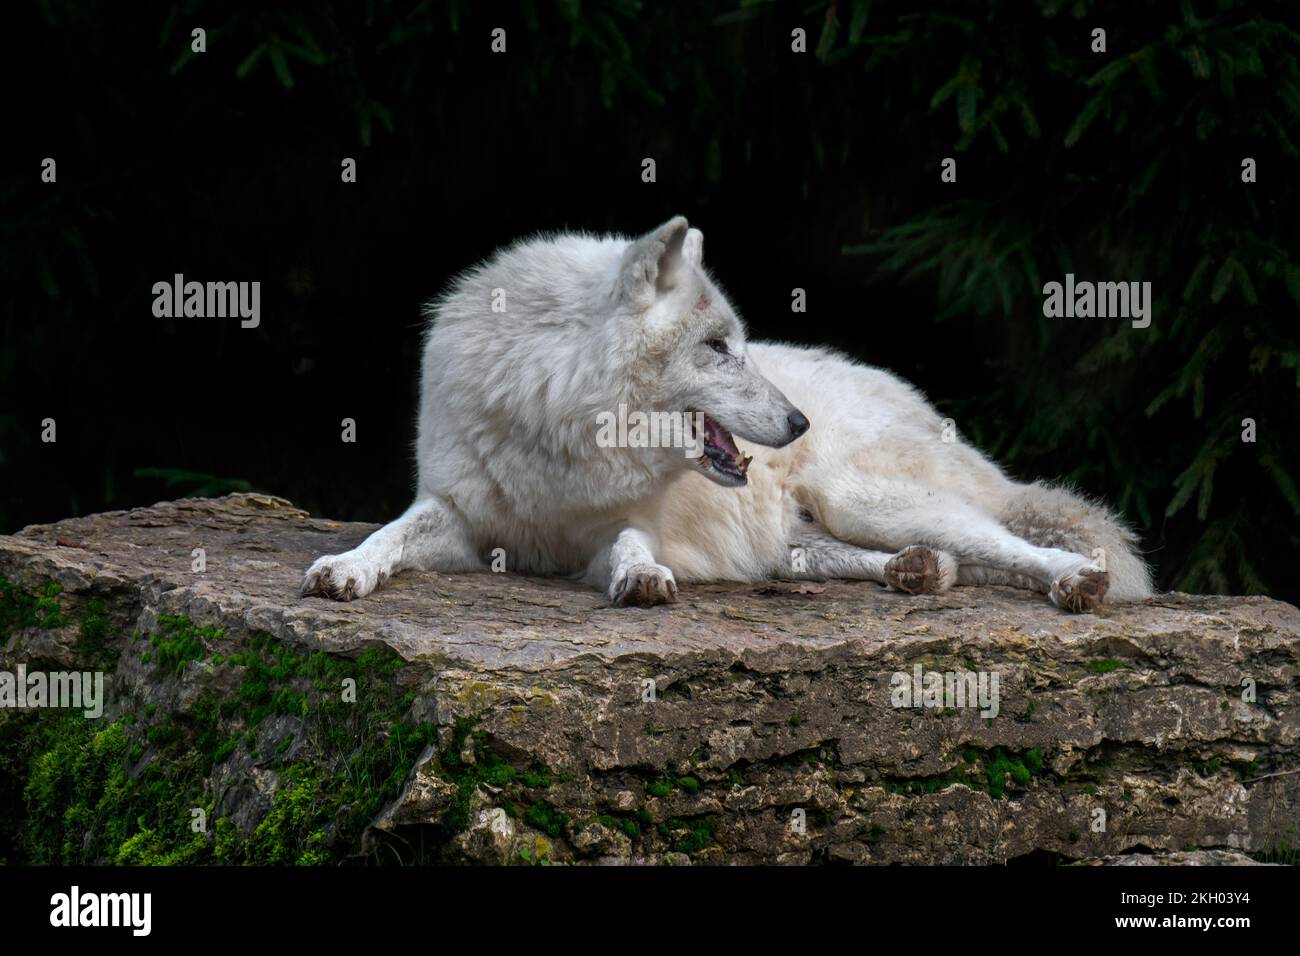 Lobo ártico / lobo blanco / lobo polar (Canis lupus arctos) descansando sobre la roca, nativa de la tundra del Alto Ártico de Canadá Foto de stock